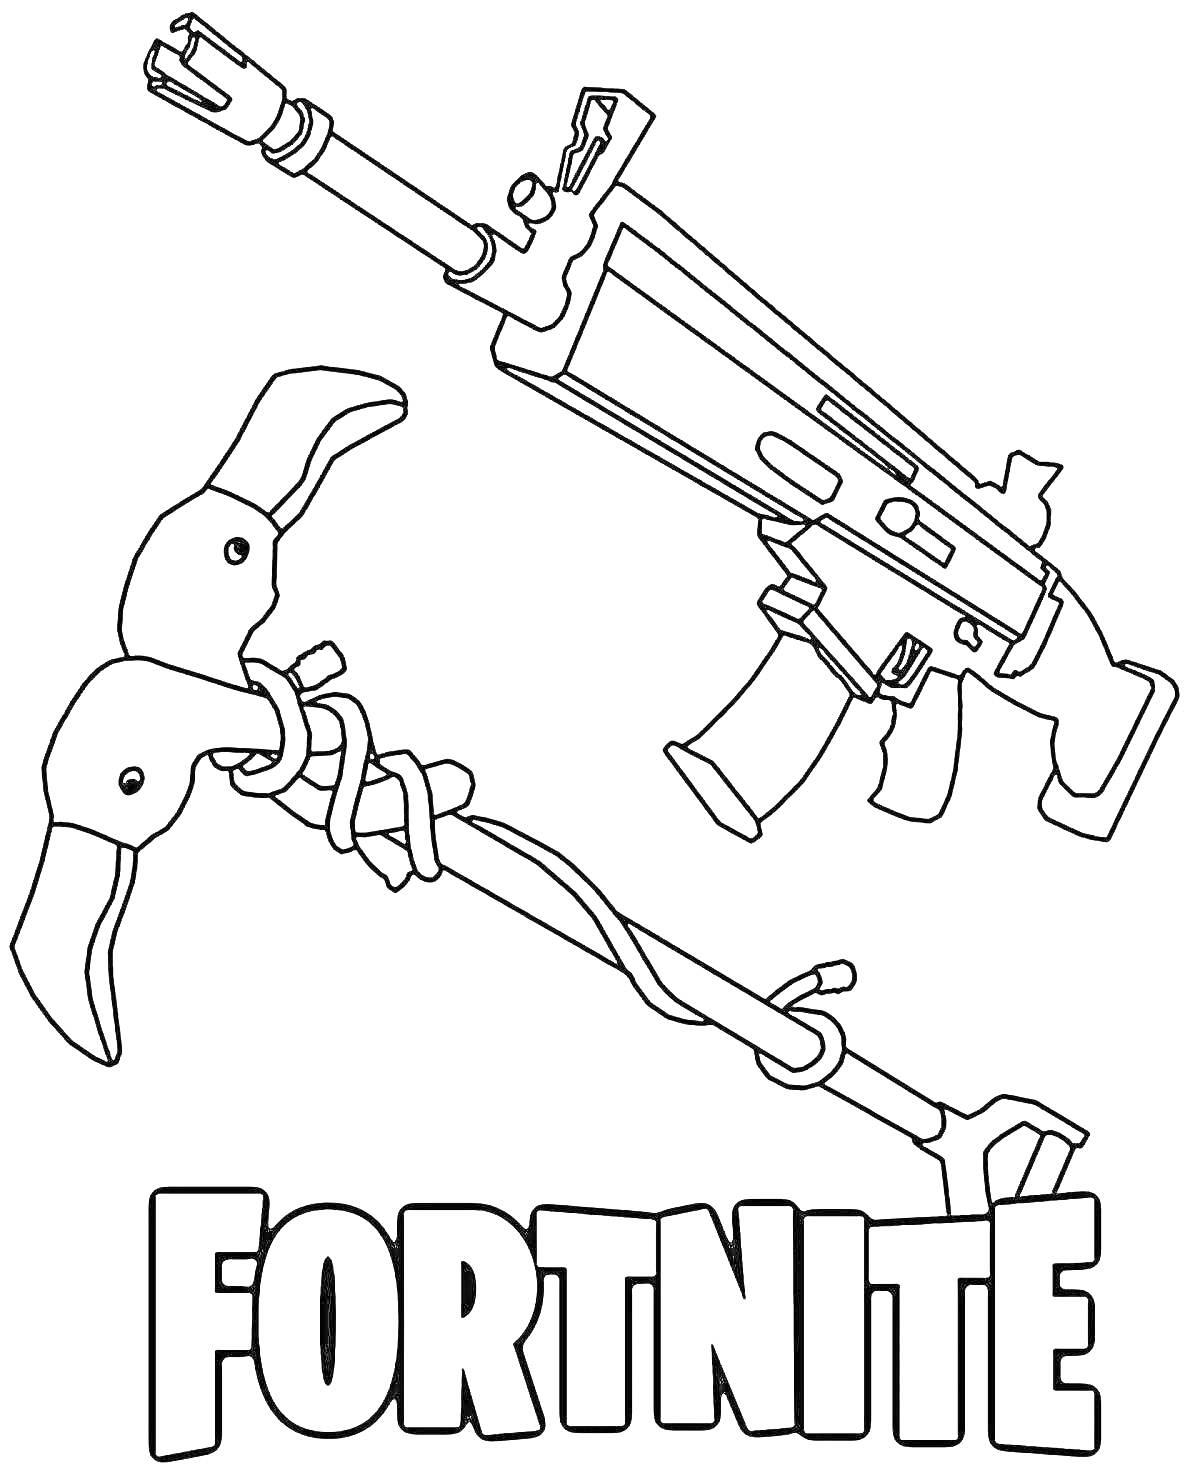 Fortnite - винтовка и кирка